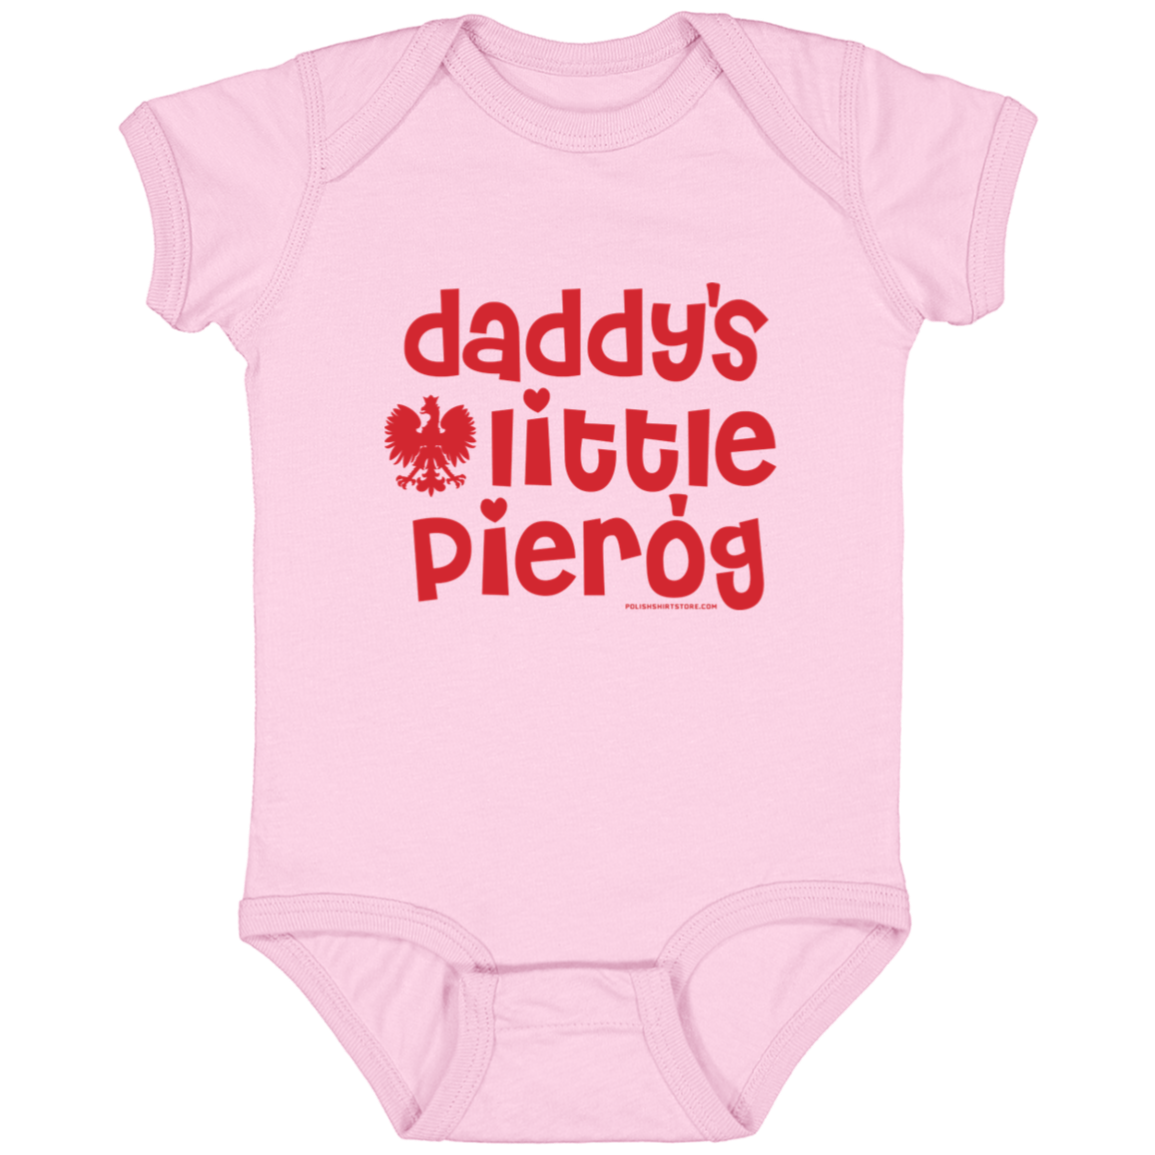 Daddy's Little Pierogi Infant Bodysuit Baby CustomCat Pink Newborn 